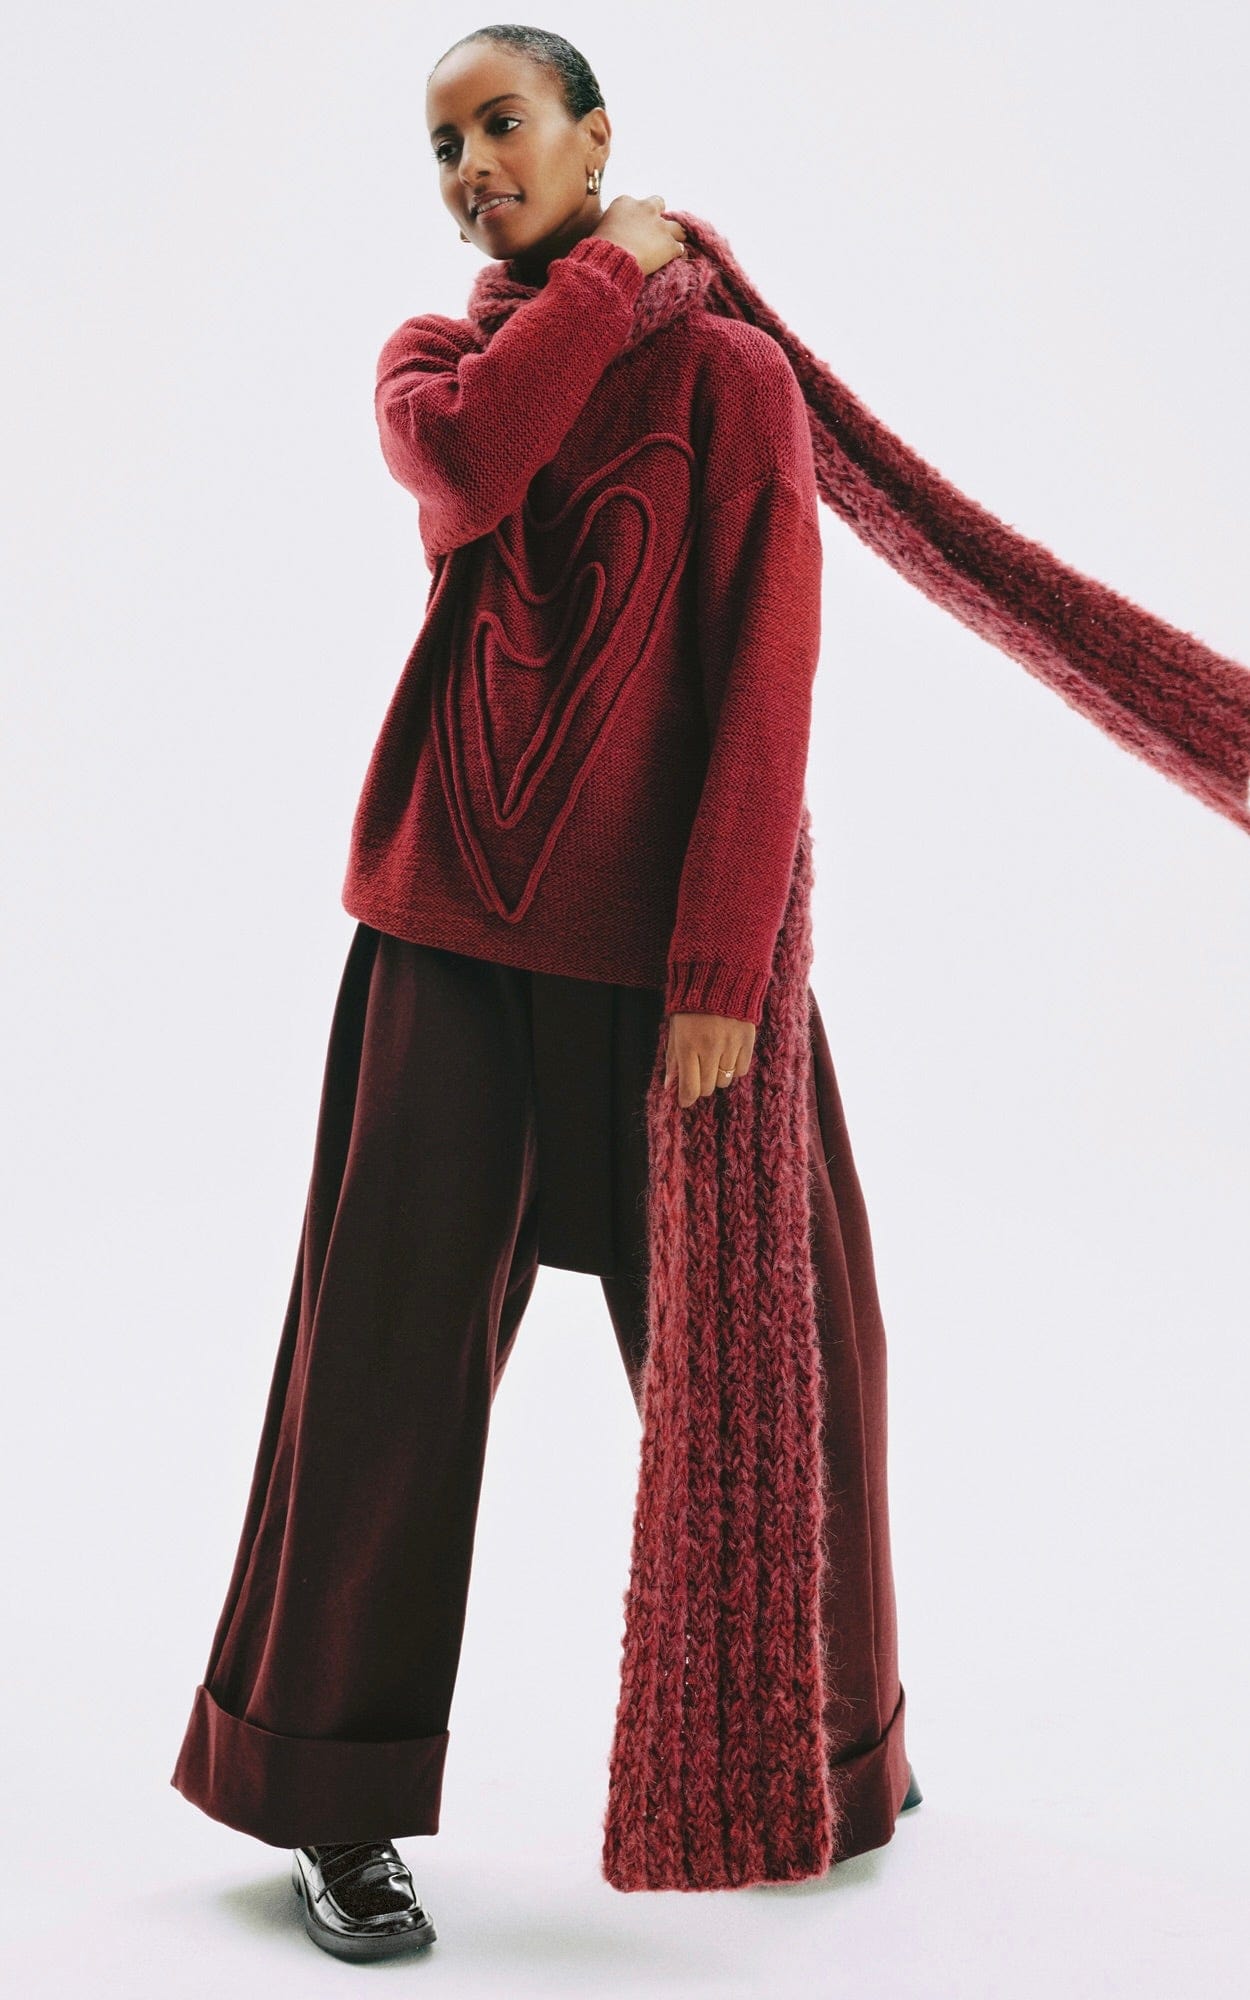 Pullover mit Herzverzierung - COOL MERINO - Strickset von LANA GROSSA jetzt online kaufen bei OONIQUE